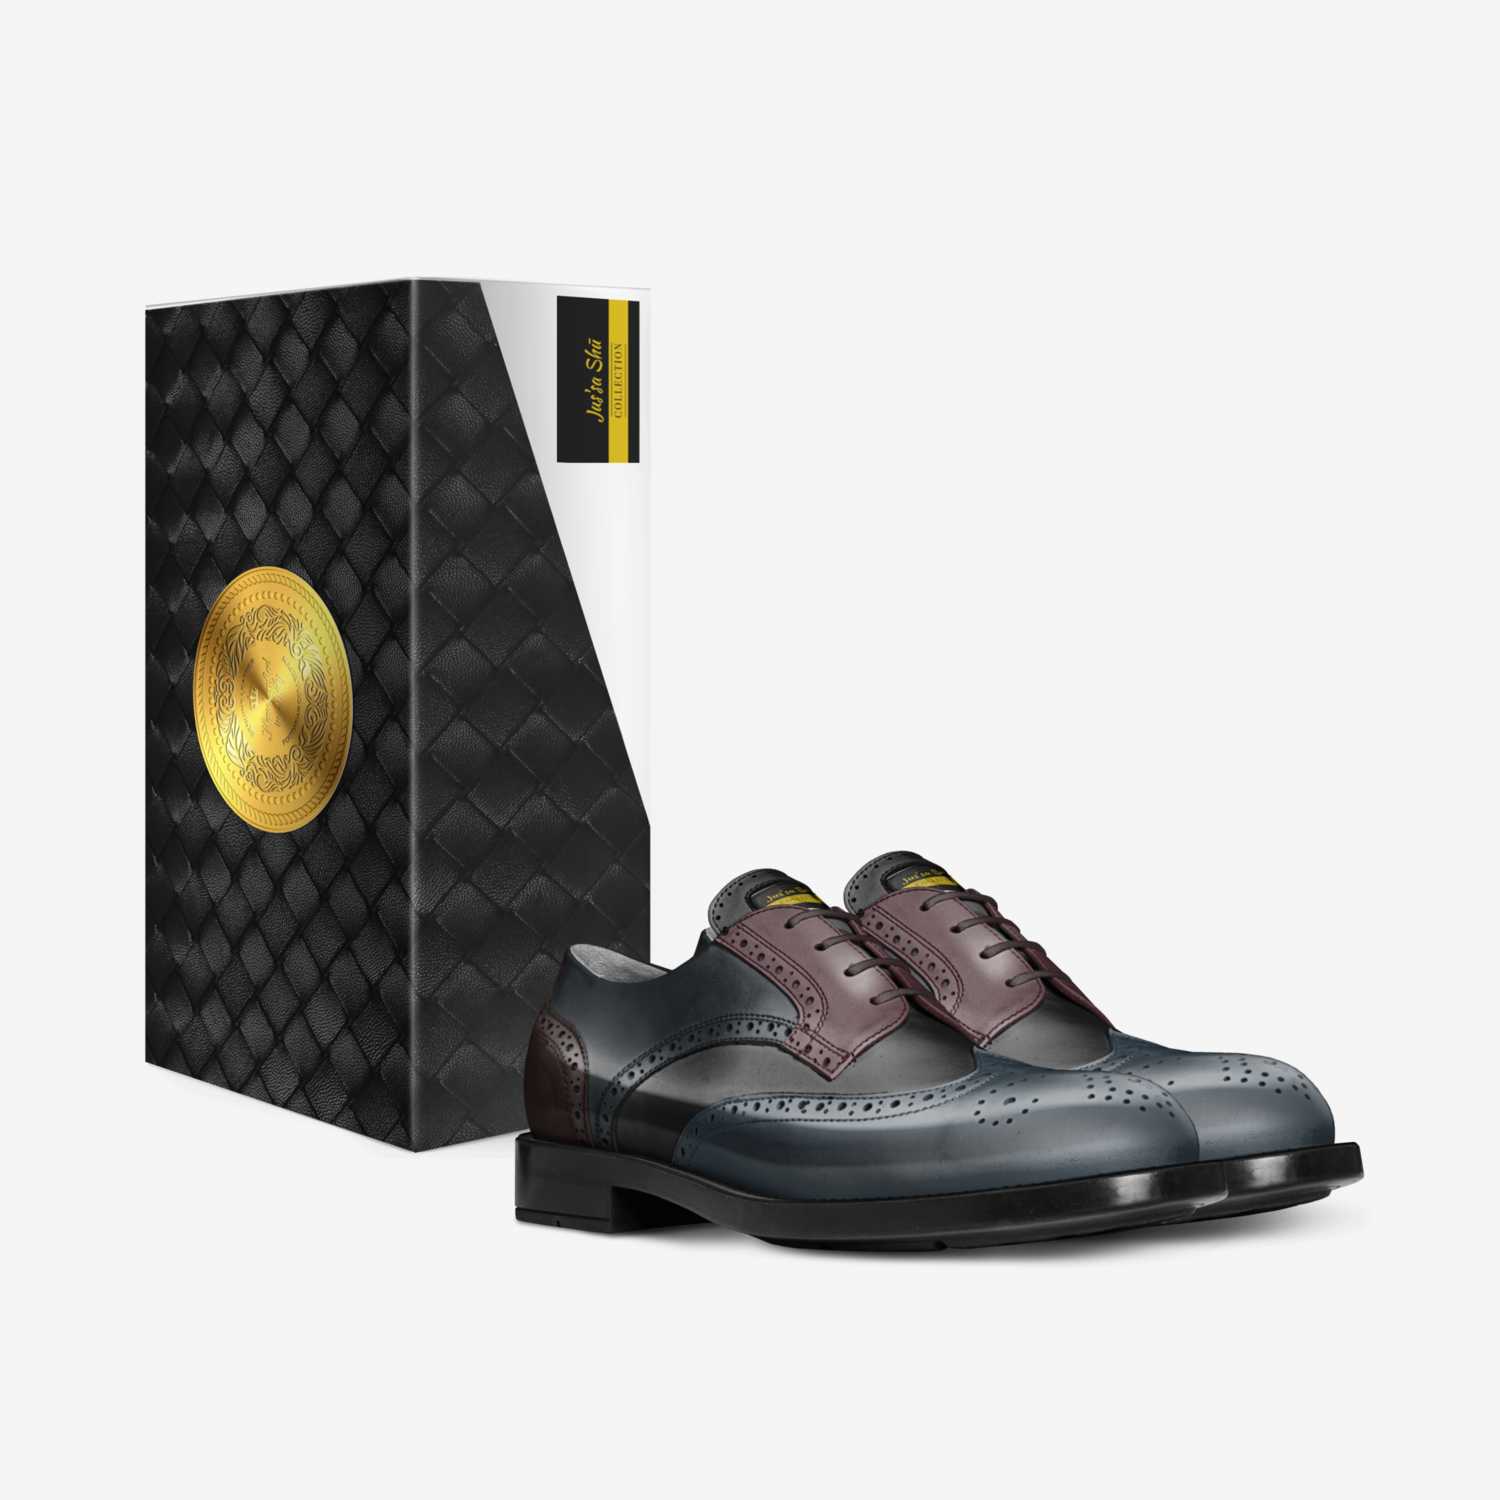 Lūtki custom made in Italy shoes by Djinn Gadison | Box view